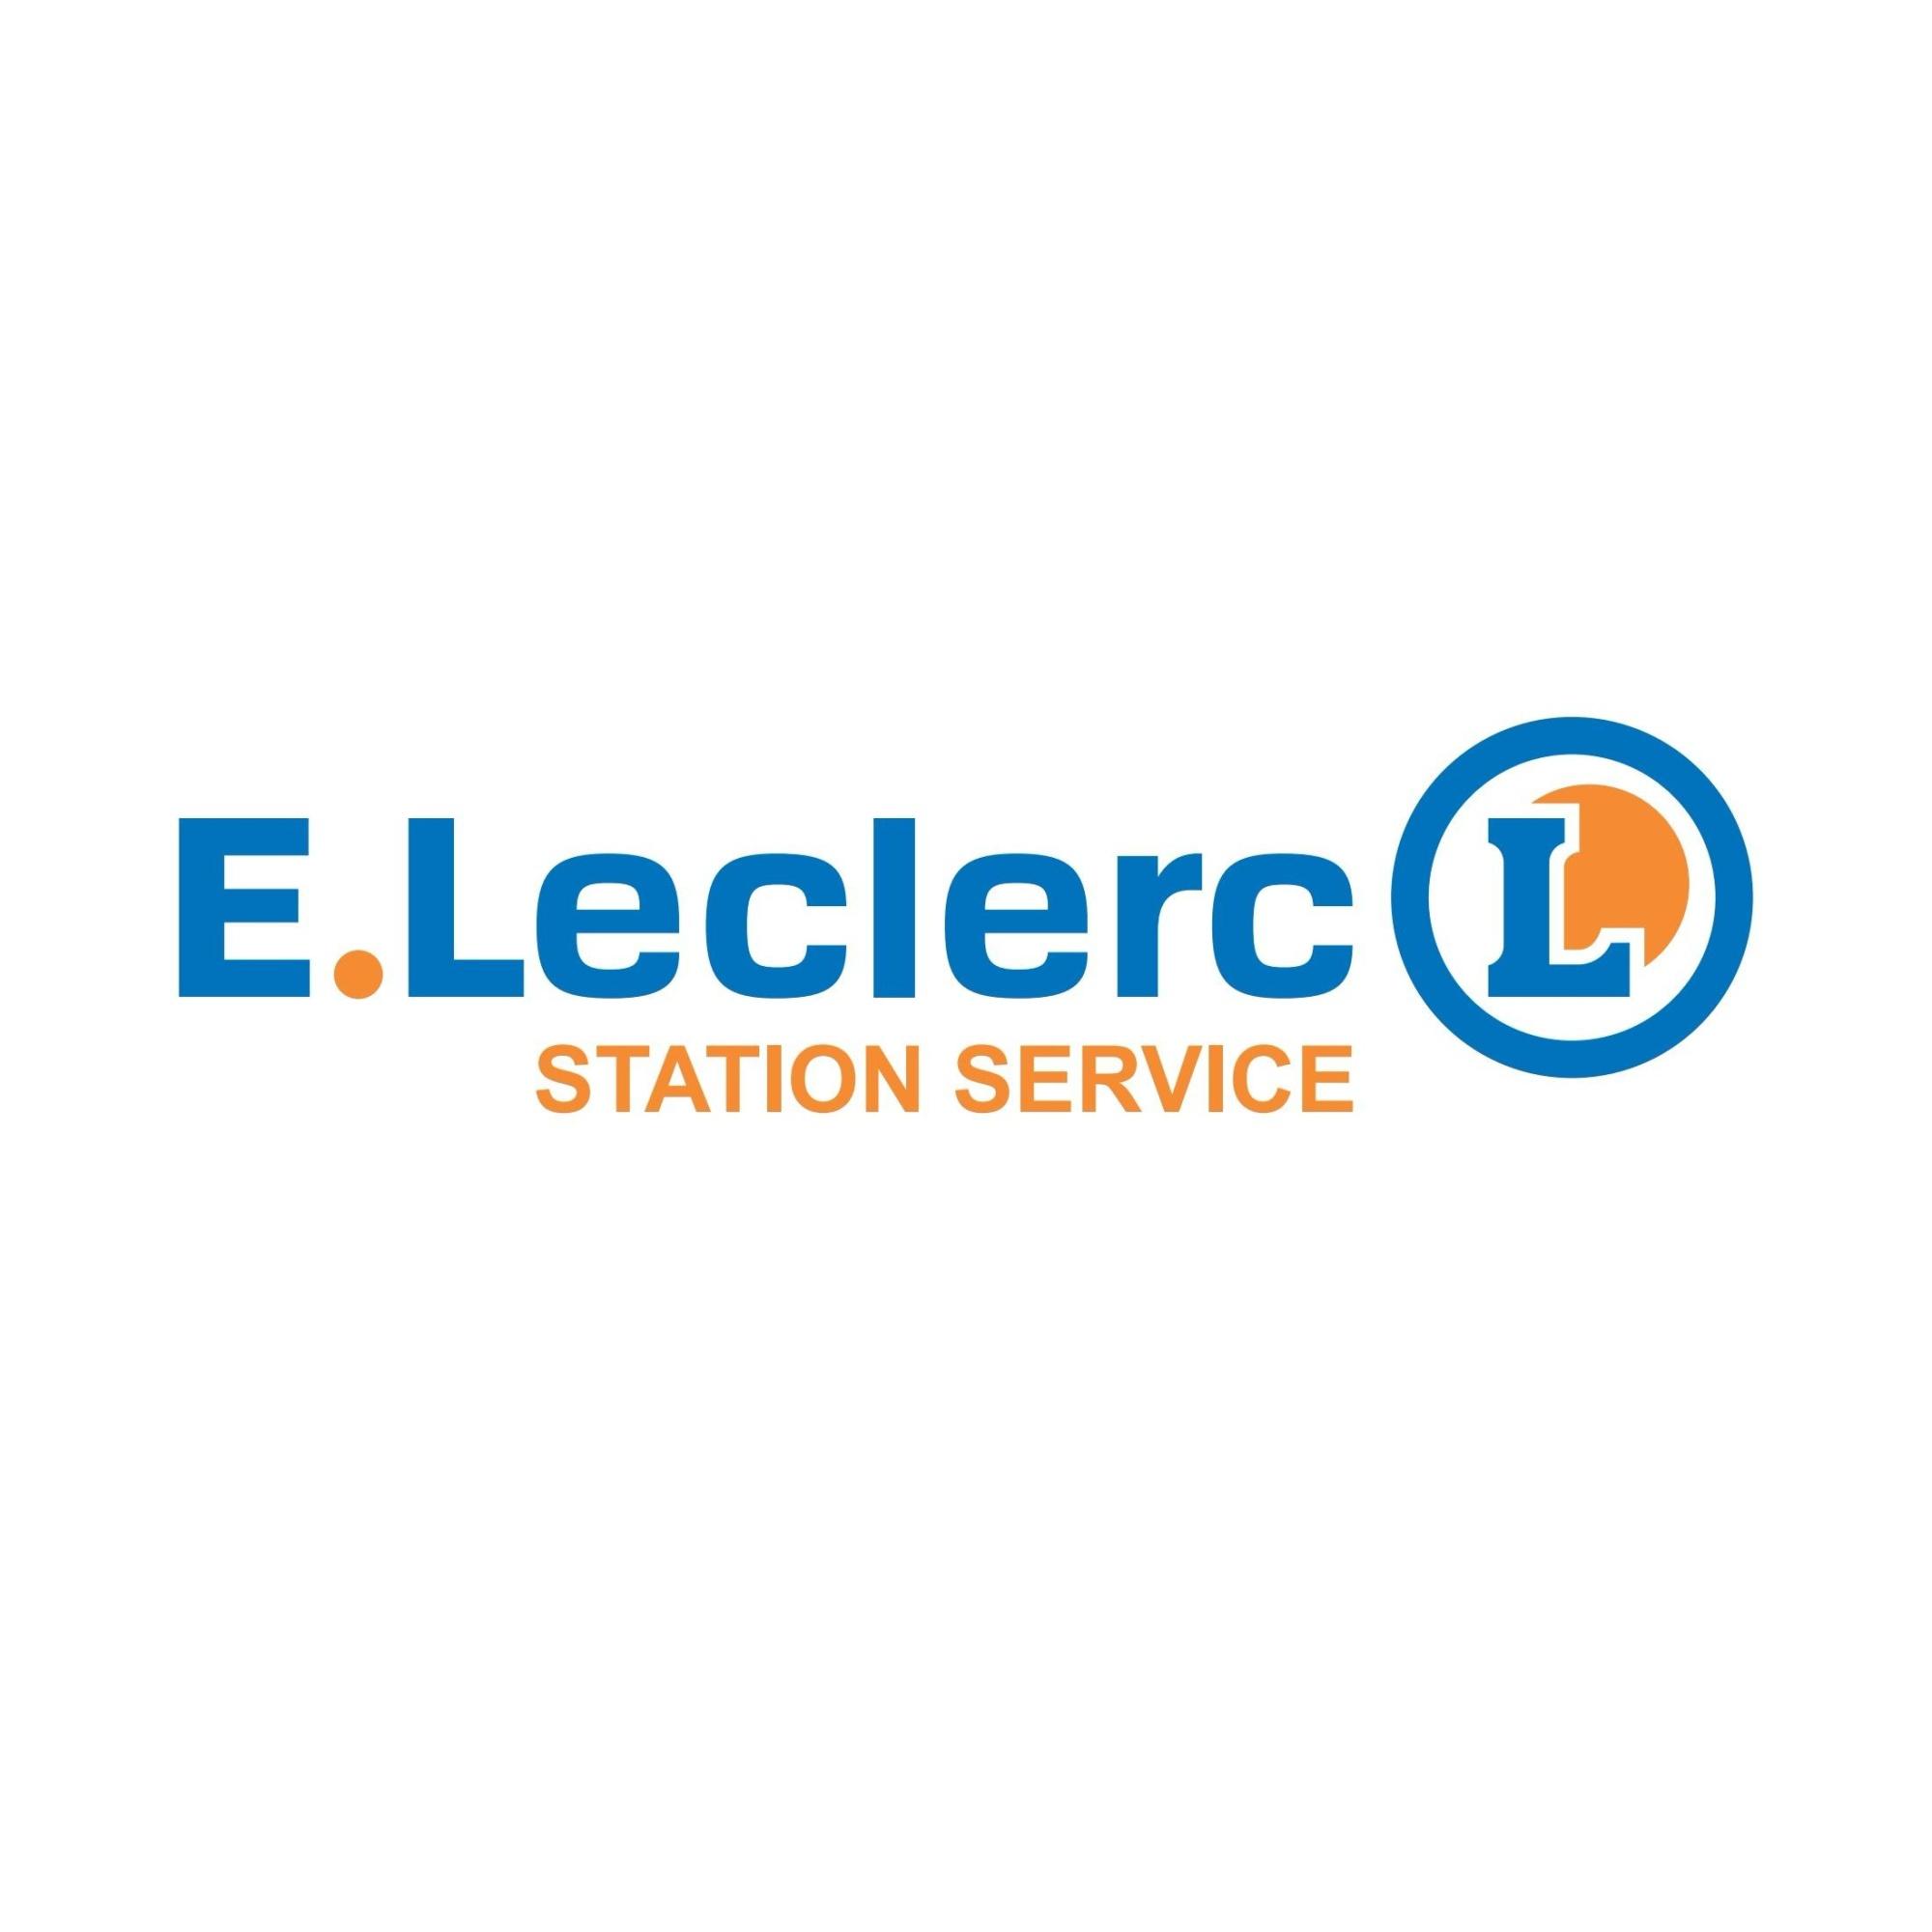 E.leclerc Station Service Paris